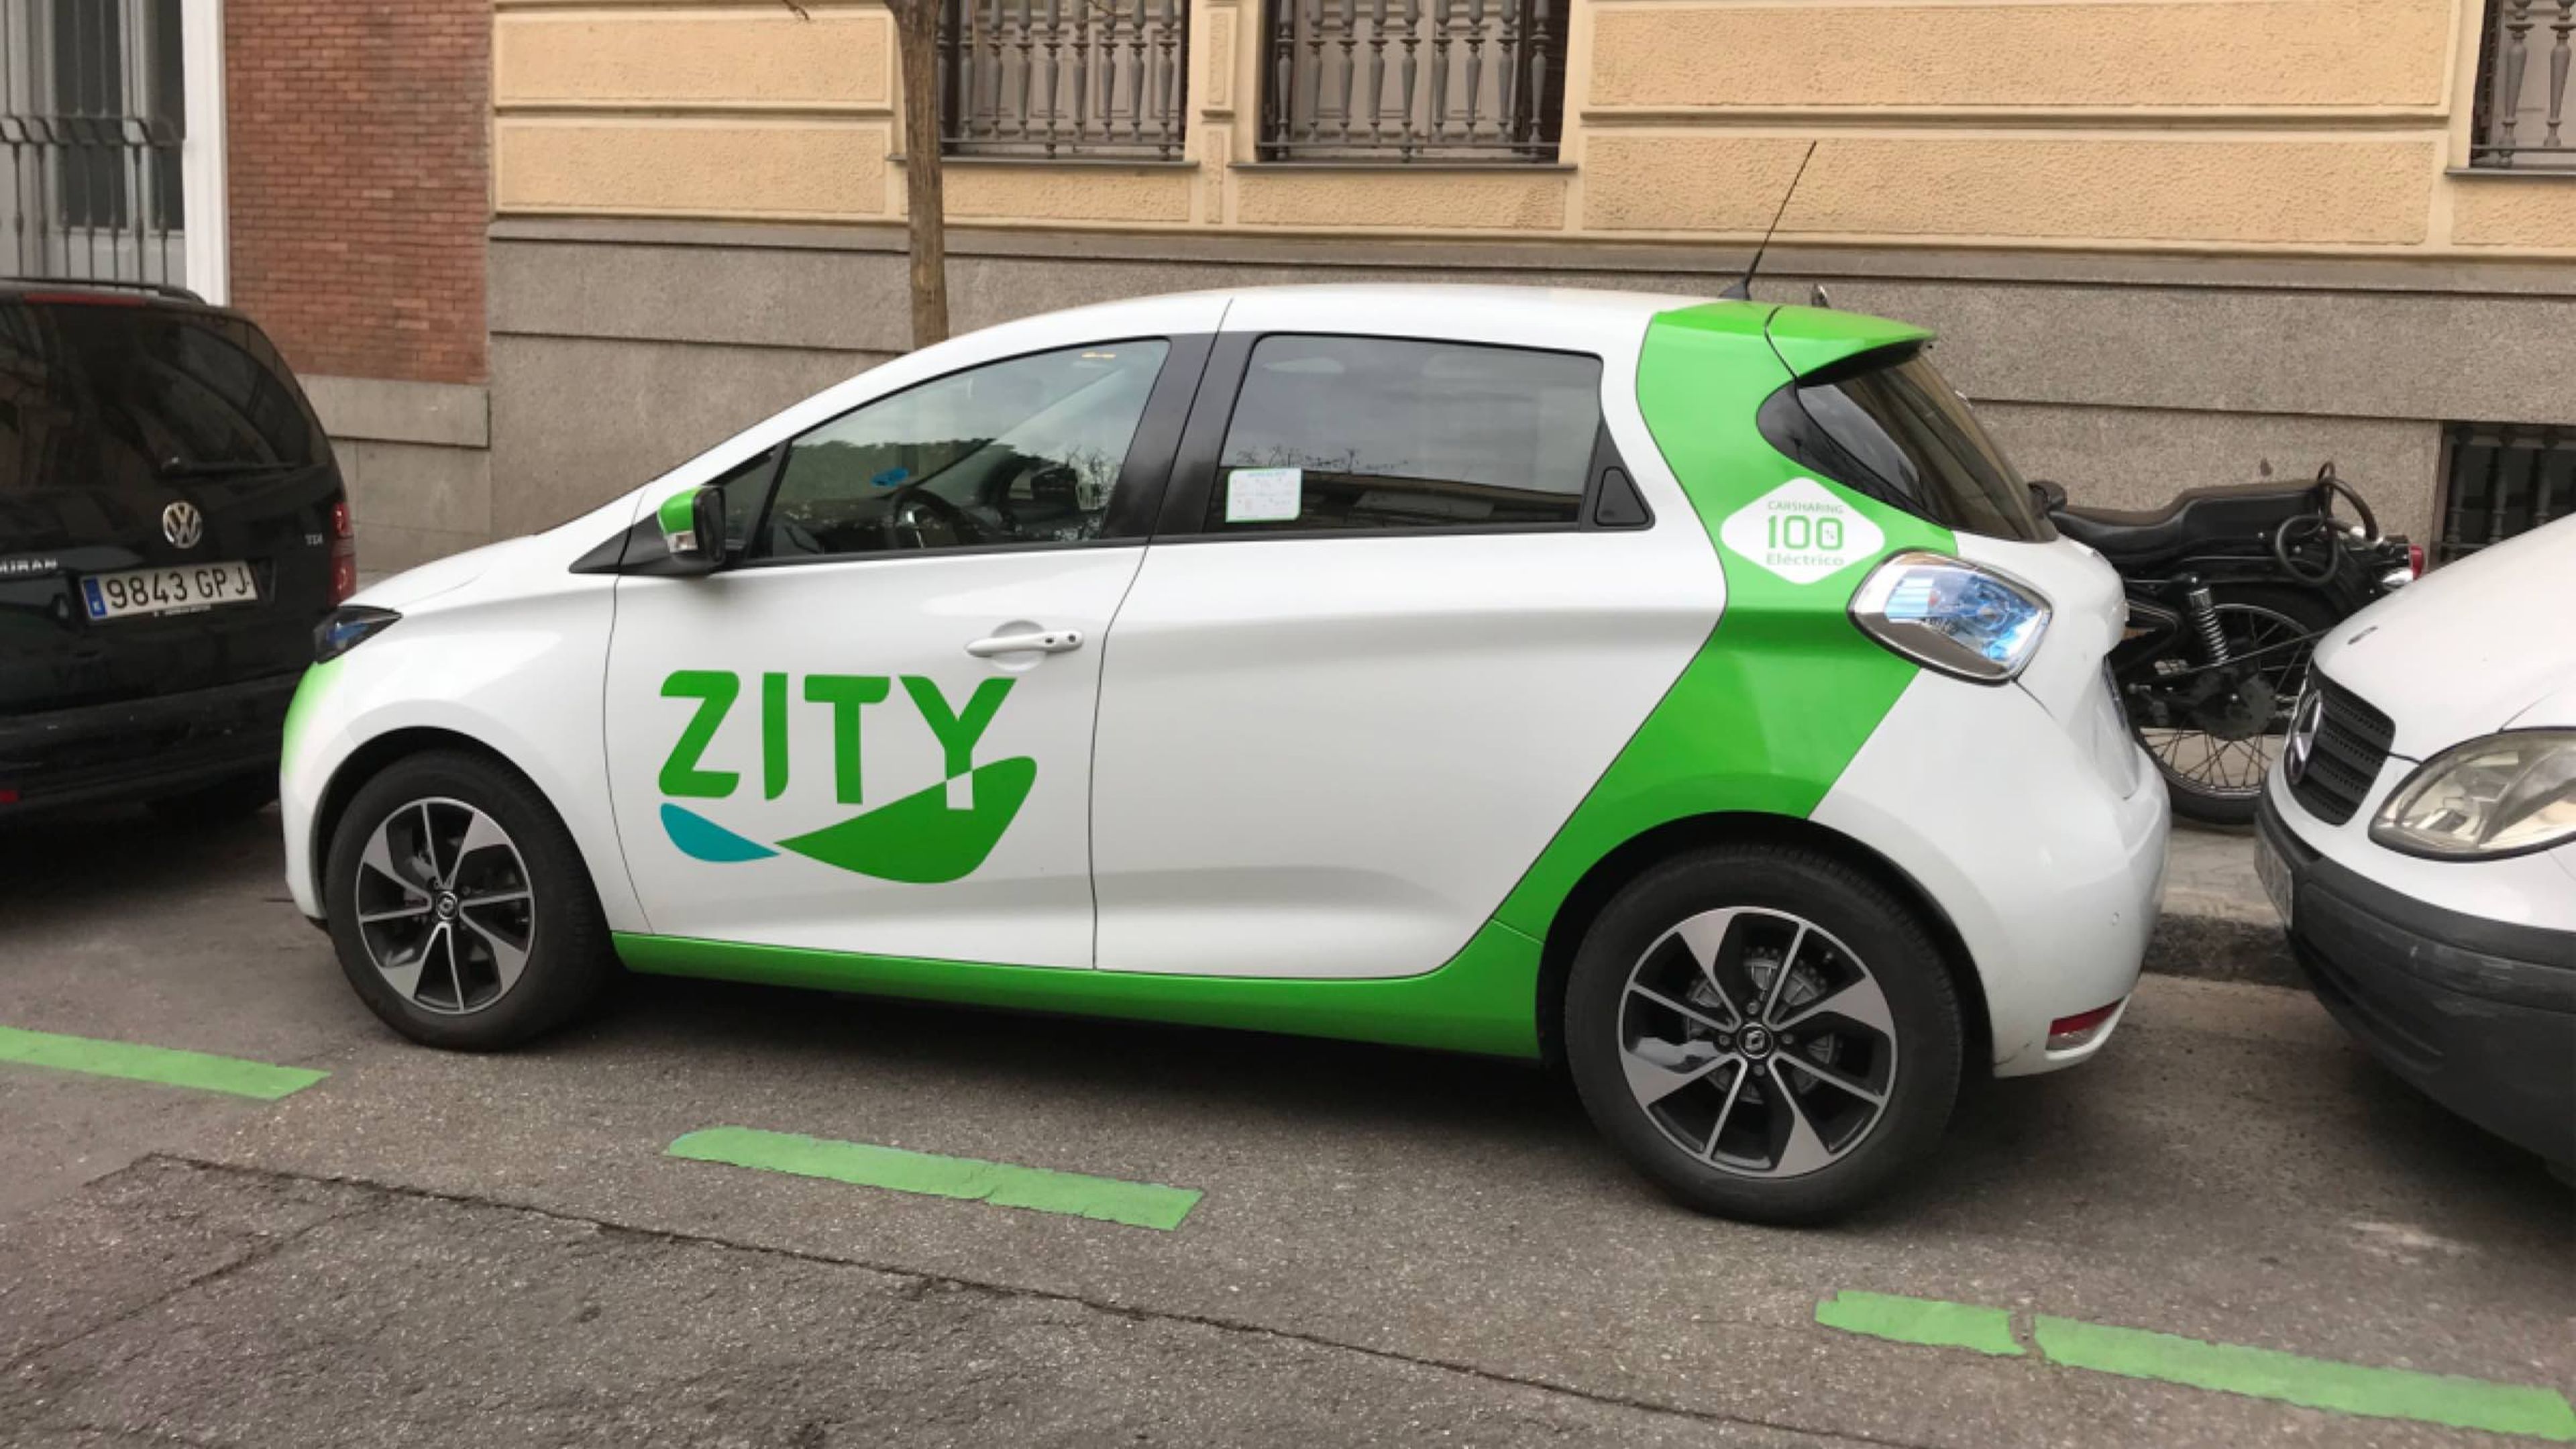 La flota de Zity, última en llegar, es la más moderna y los coches tienen más autonomía espacio en el interior.